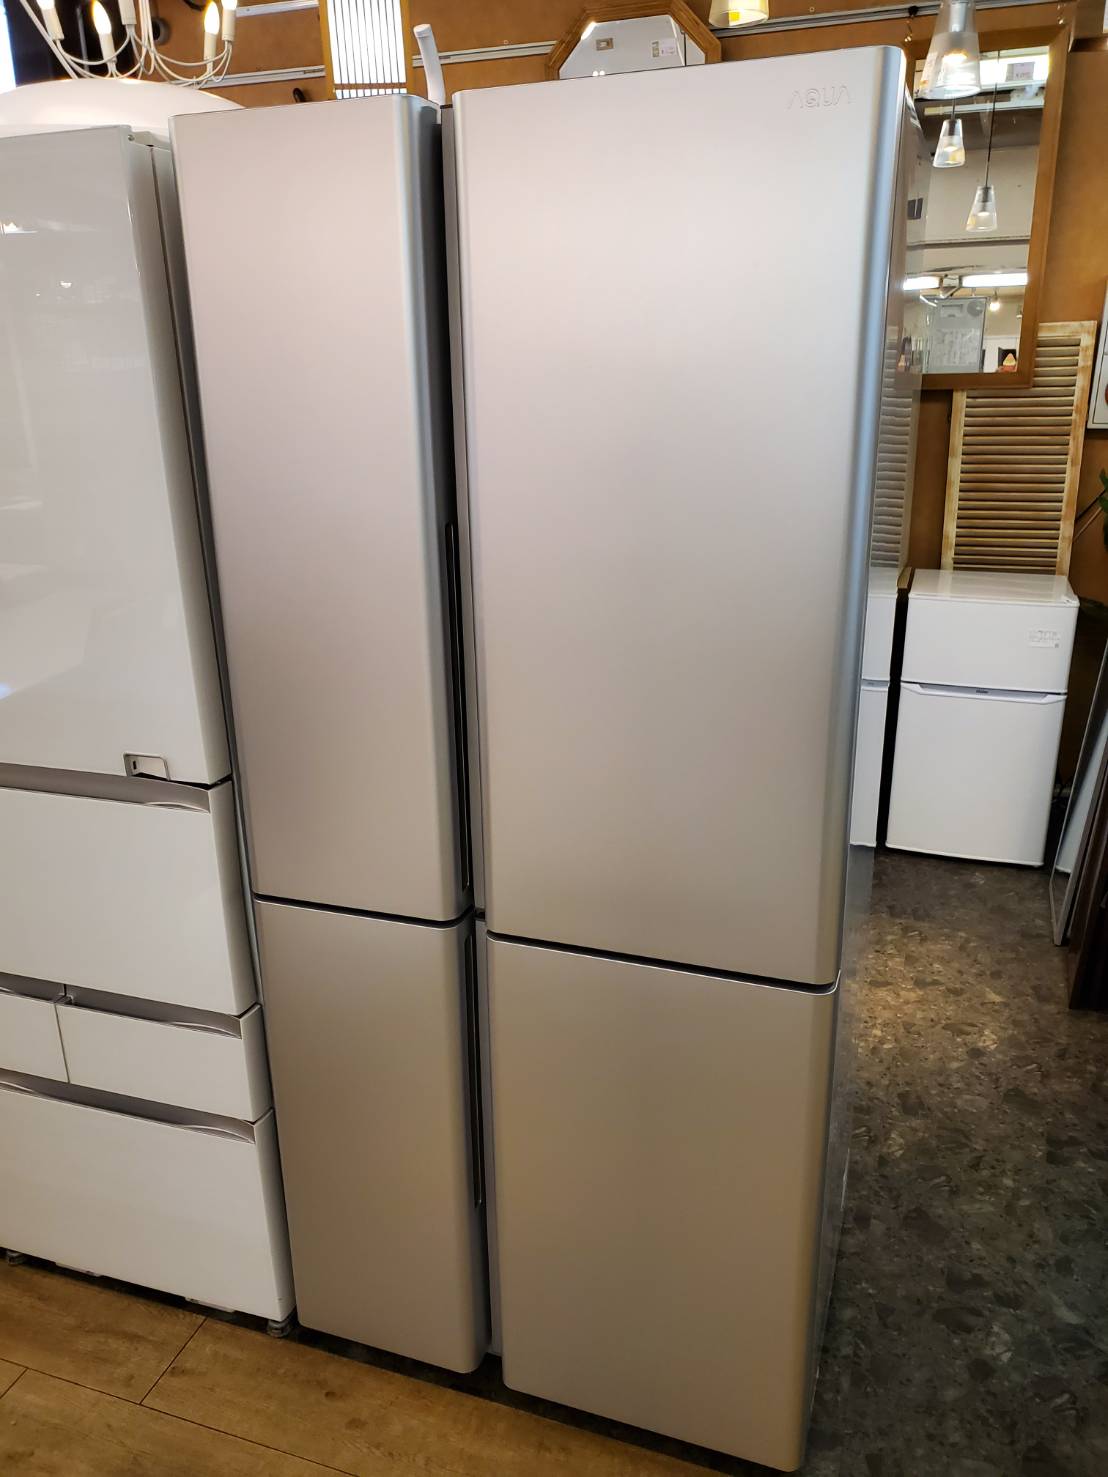 ☆AQUA アクア 512L 4ドア冷蔵庫 2020年製 高年式 スタイリッシュ 大容量冷凍室 両開き 冷凍冷蔵庫 買取しました☆ 愛知と